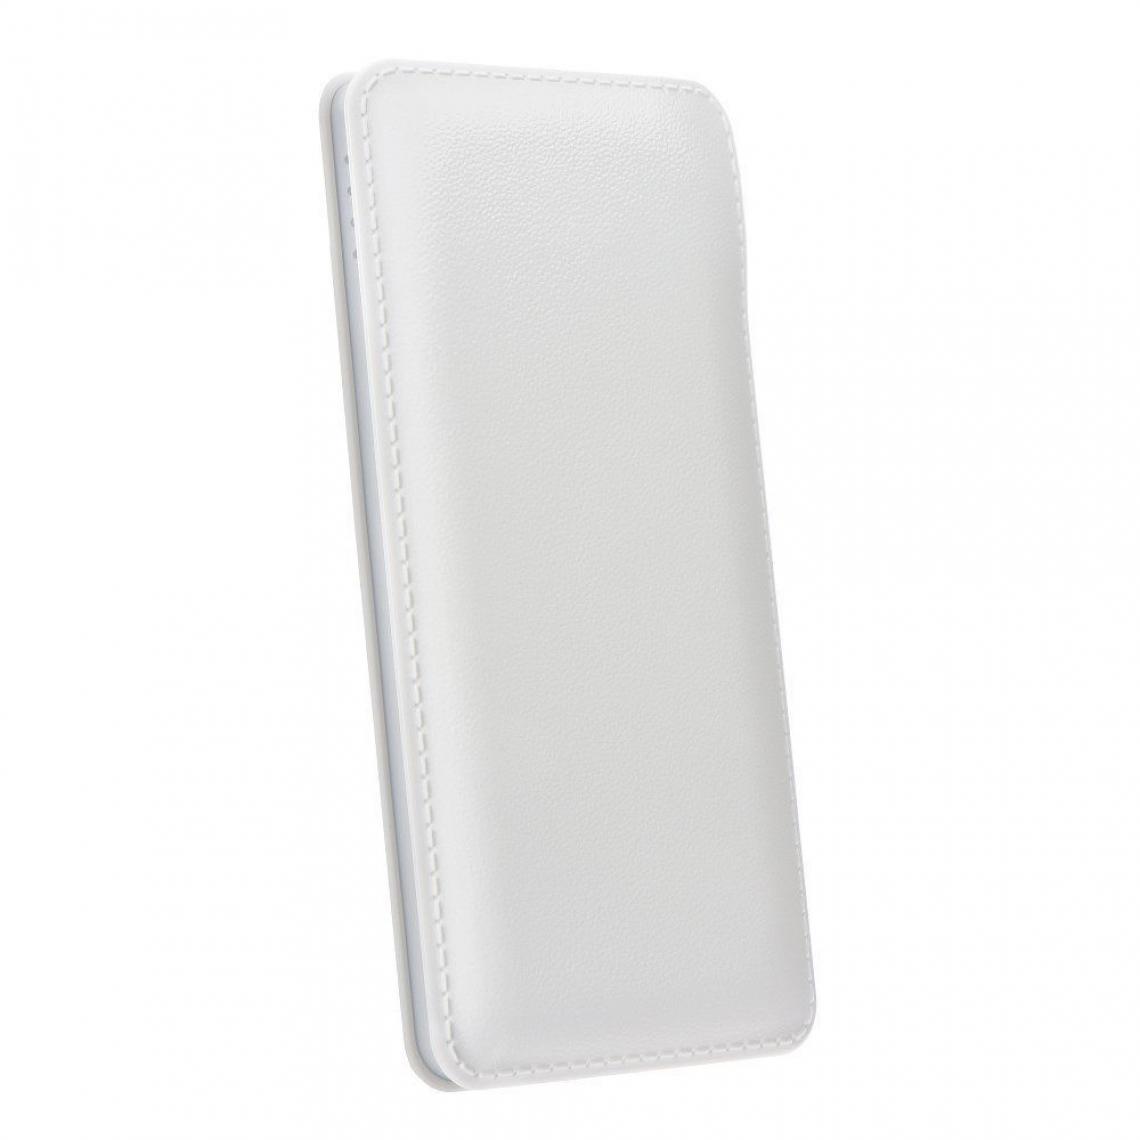 Ozzzo - Chargeur batterie externe 30000 mAh powerbank ozzzo blanc pour Xiaomi Redmi Note 3 Pro - Autres accessoires smartphone